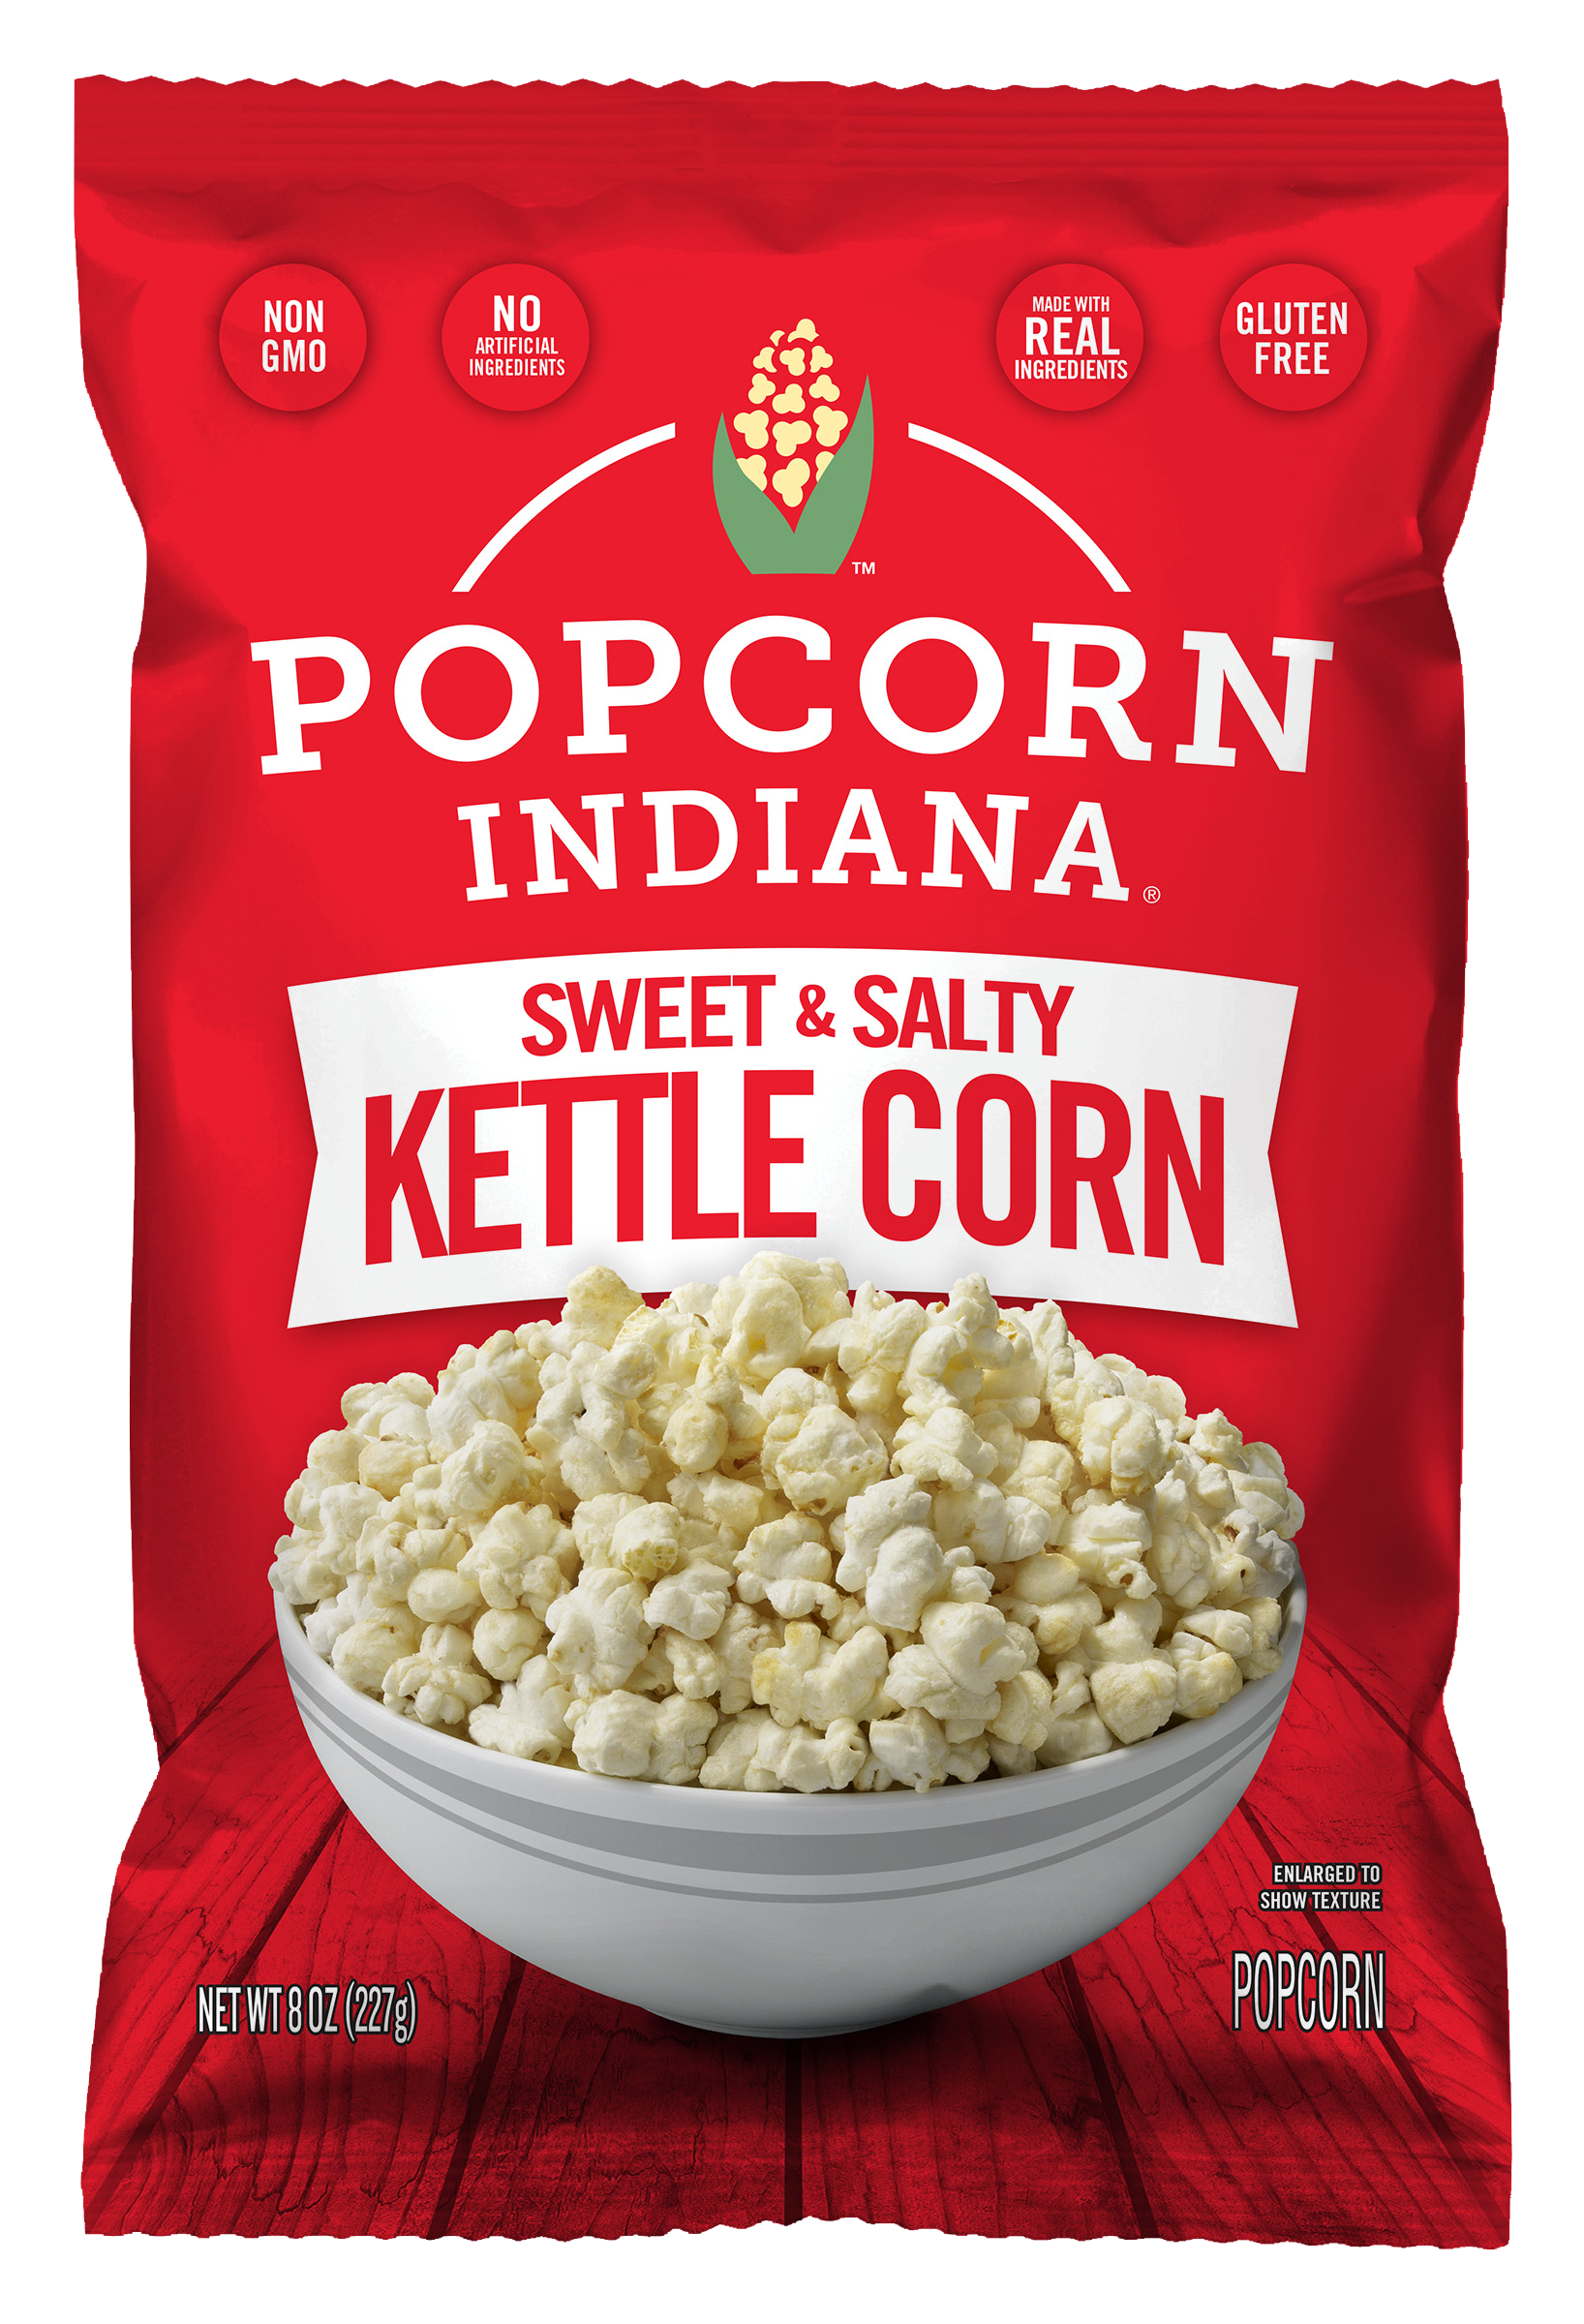 Kettle Corn package